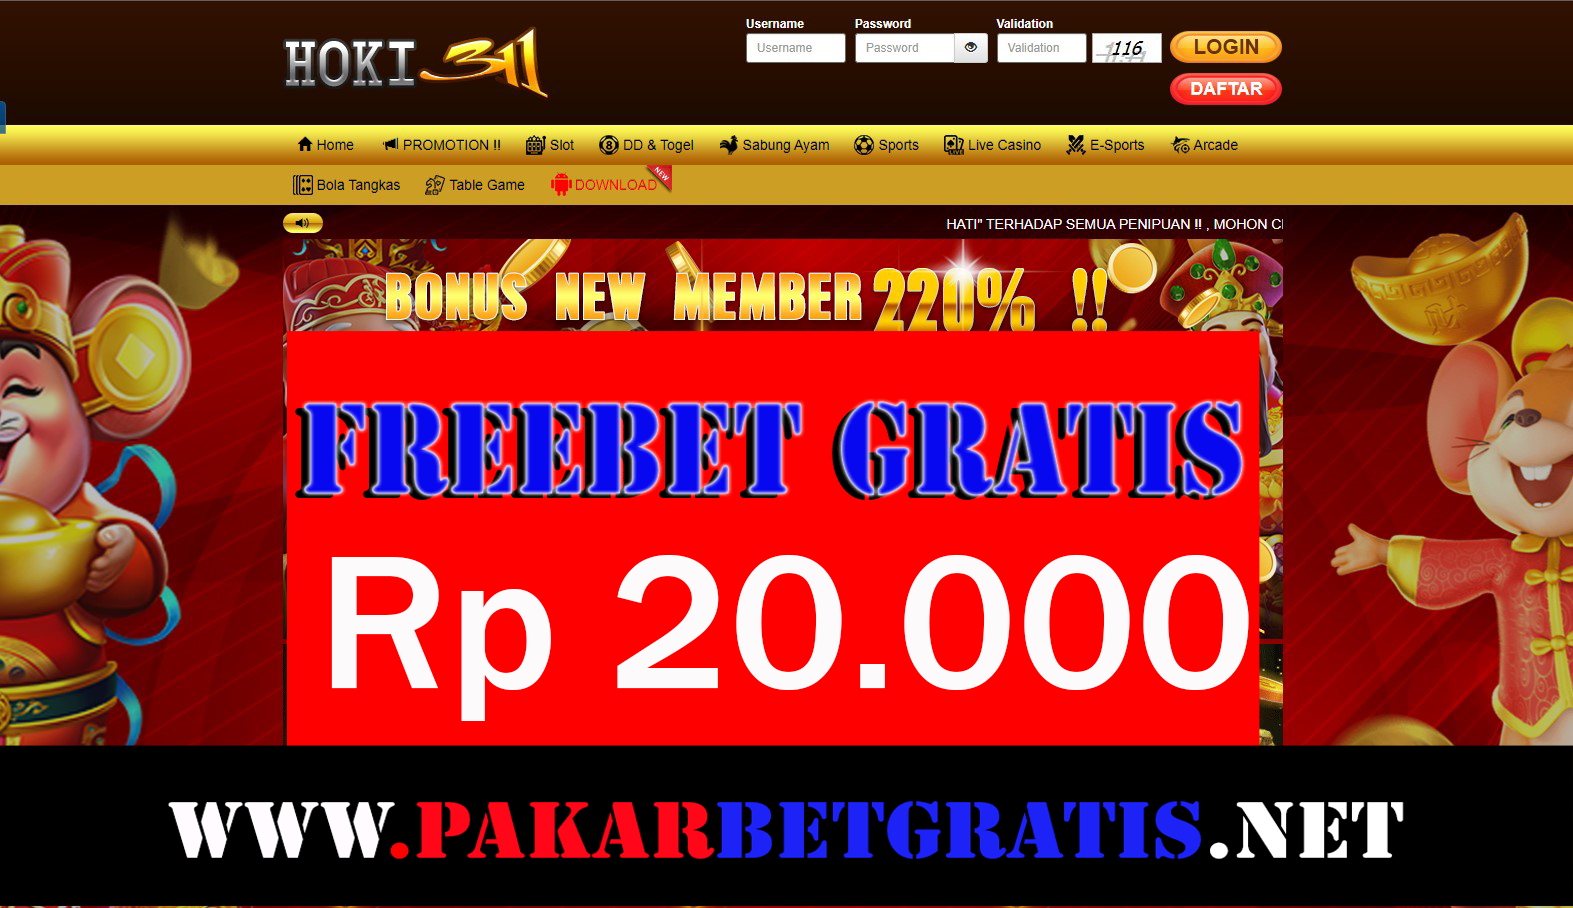 Hoki311 Freebet Gratis Rp 20.000 Tanpa Deposit